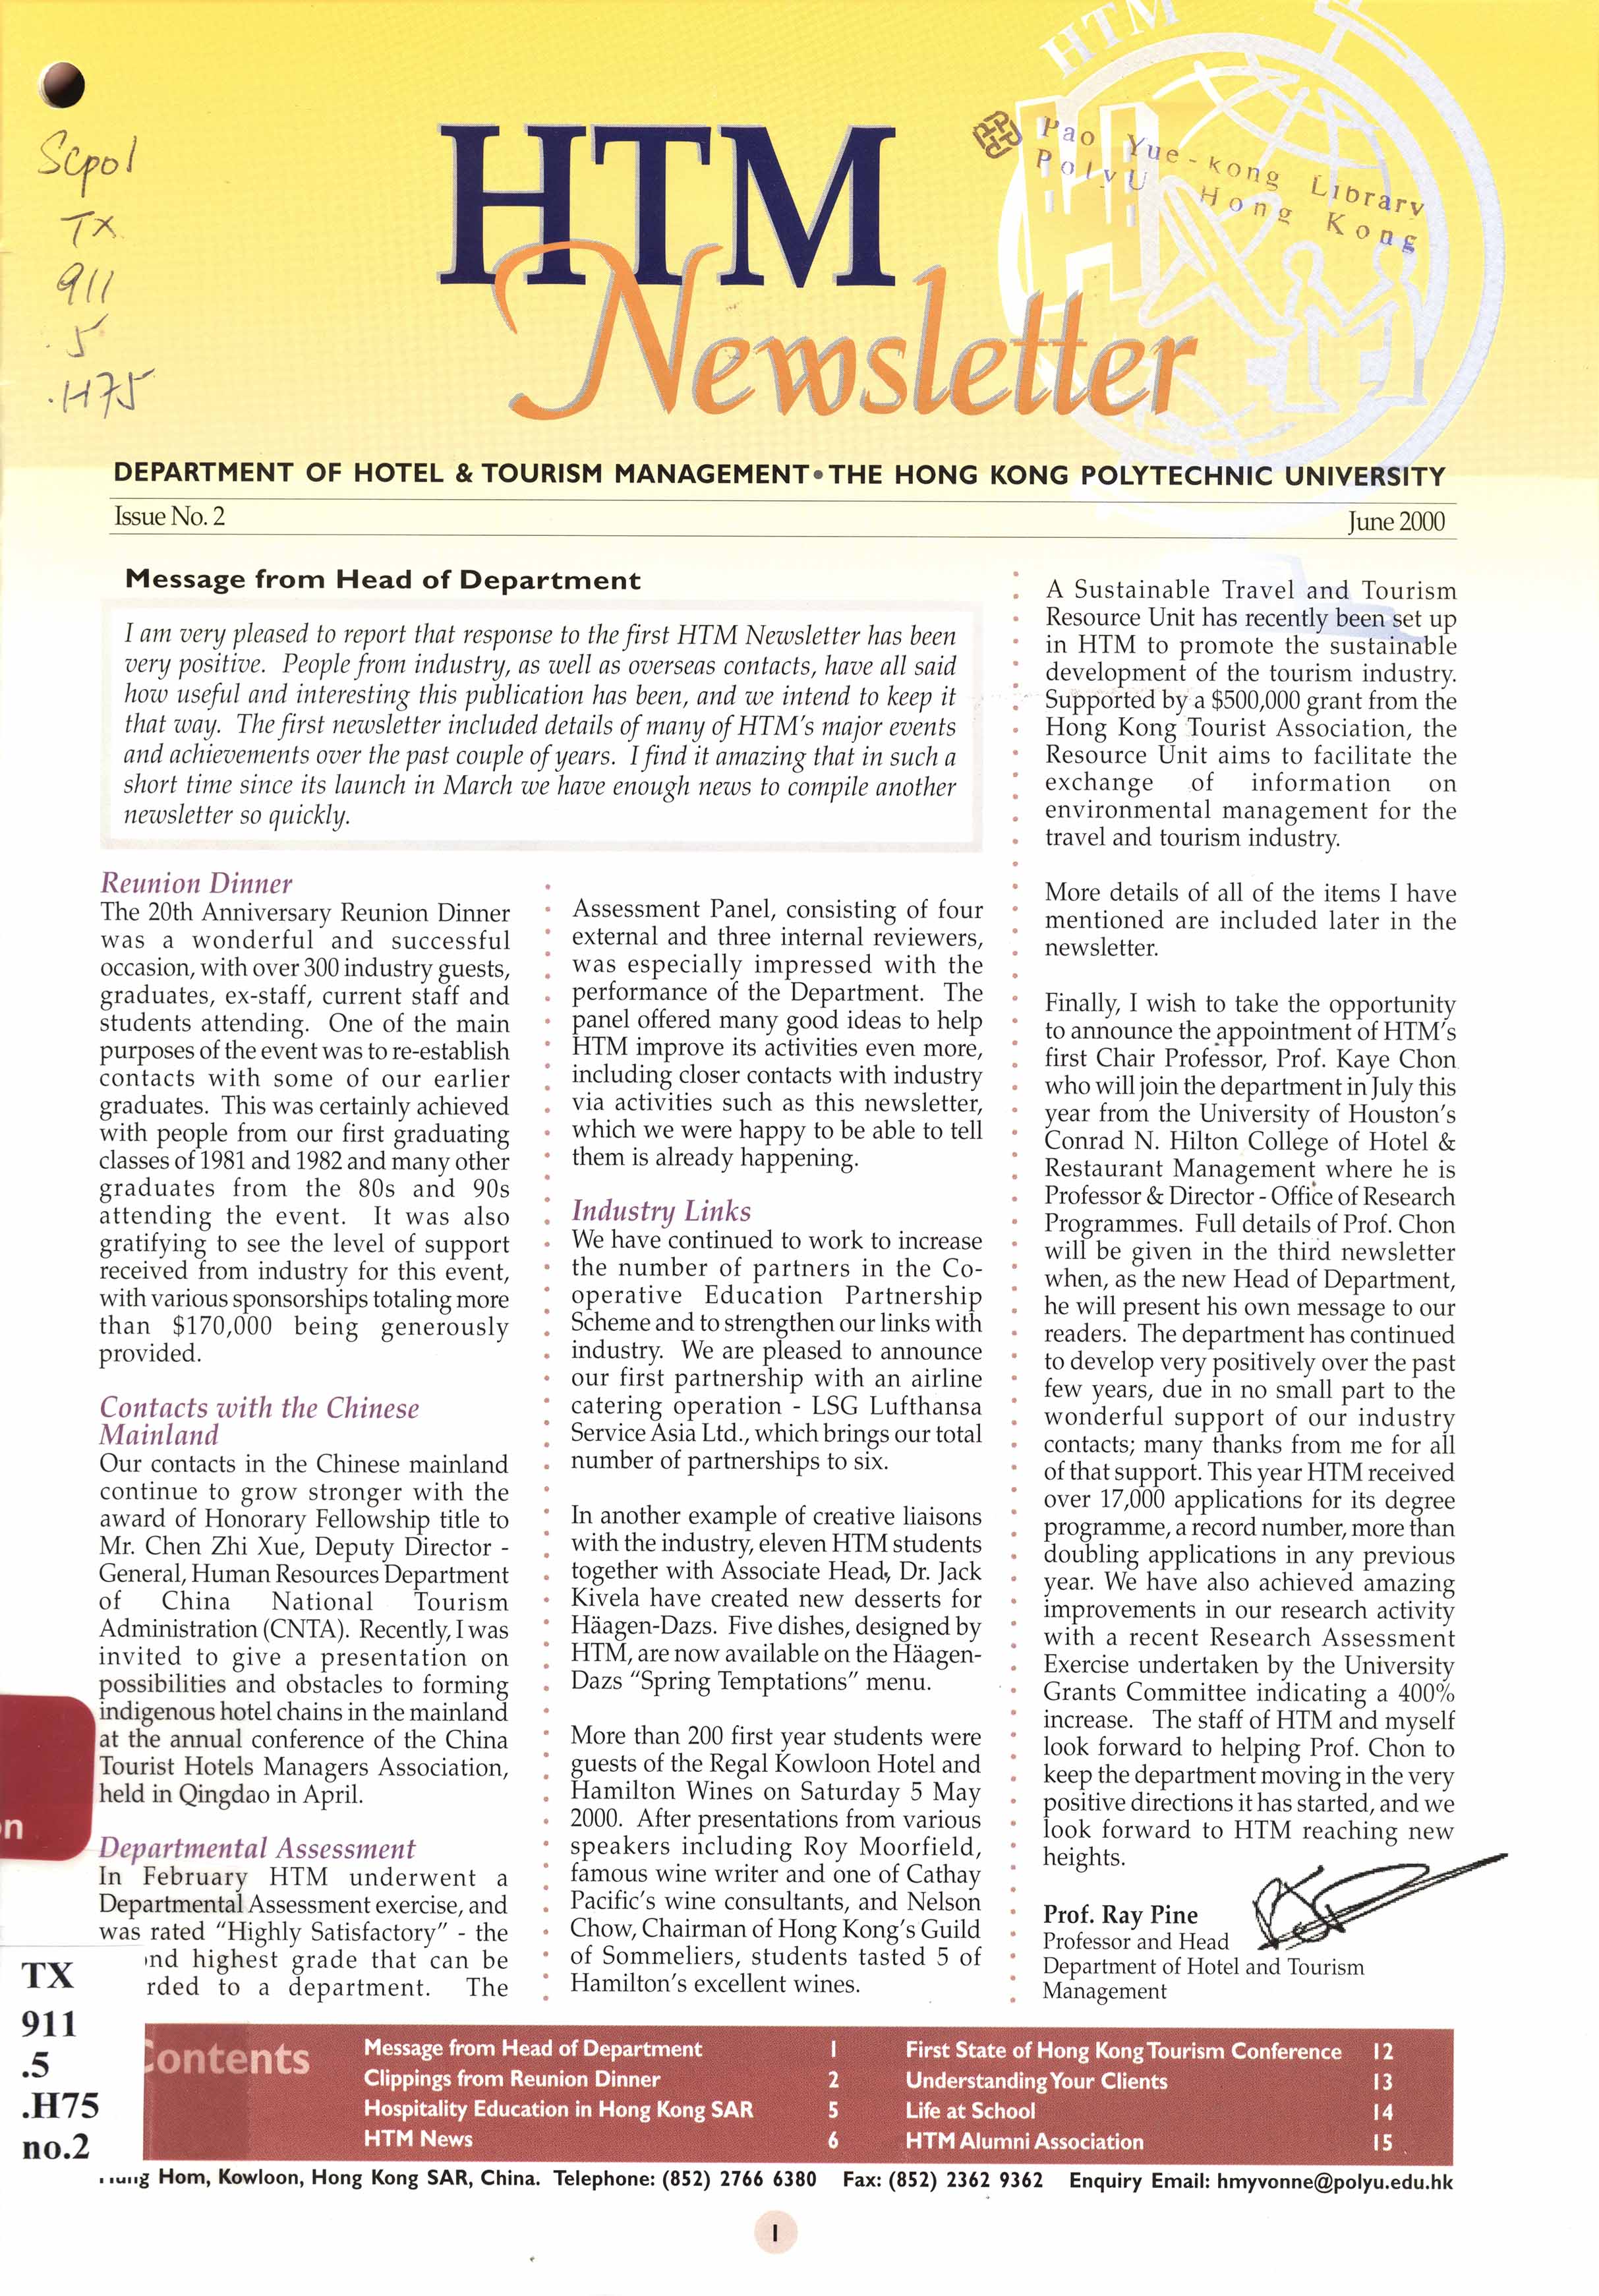 HTM newsletter. No.2 - June 2000